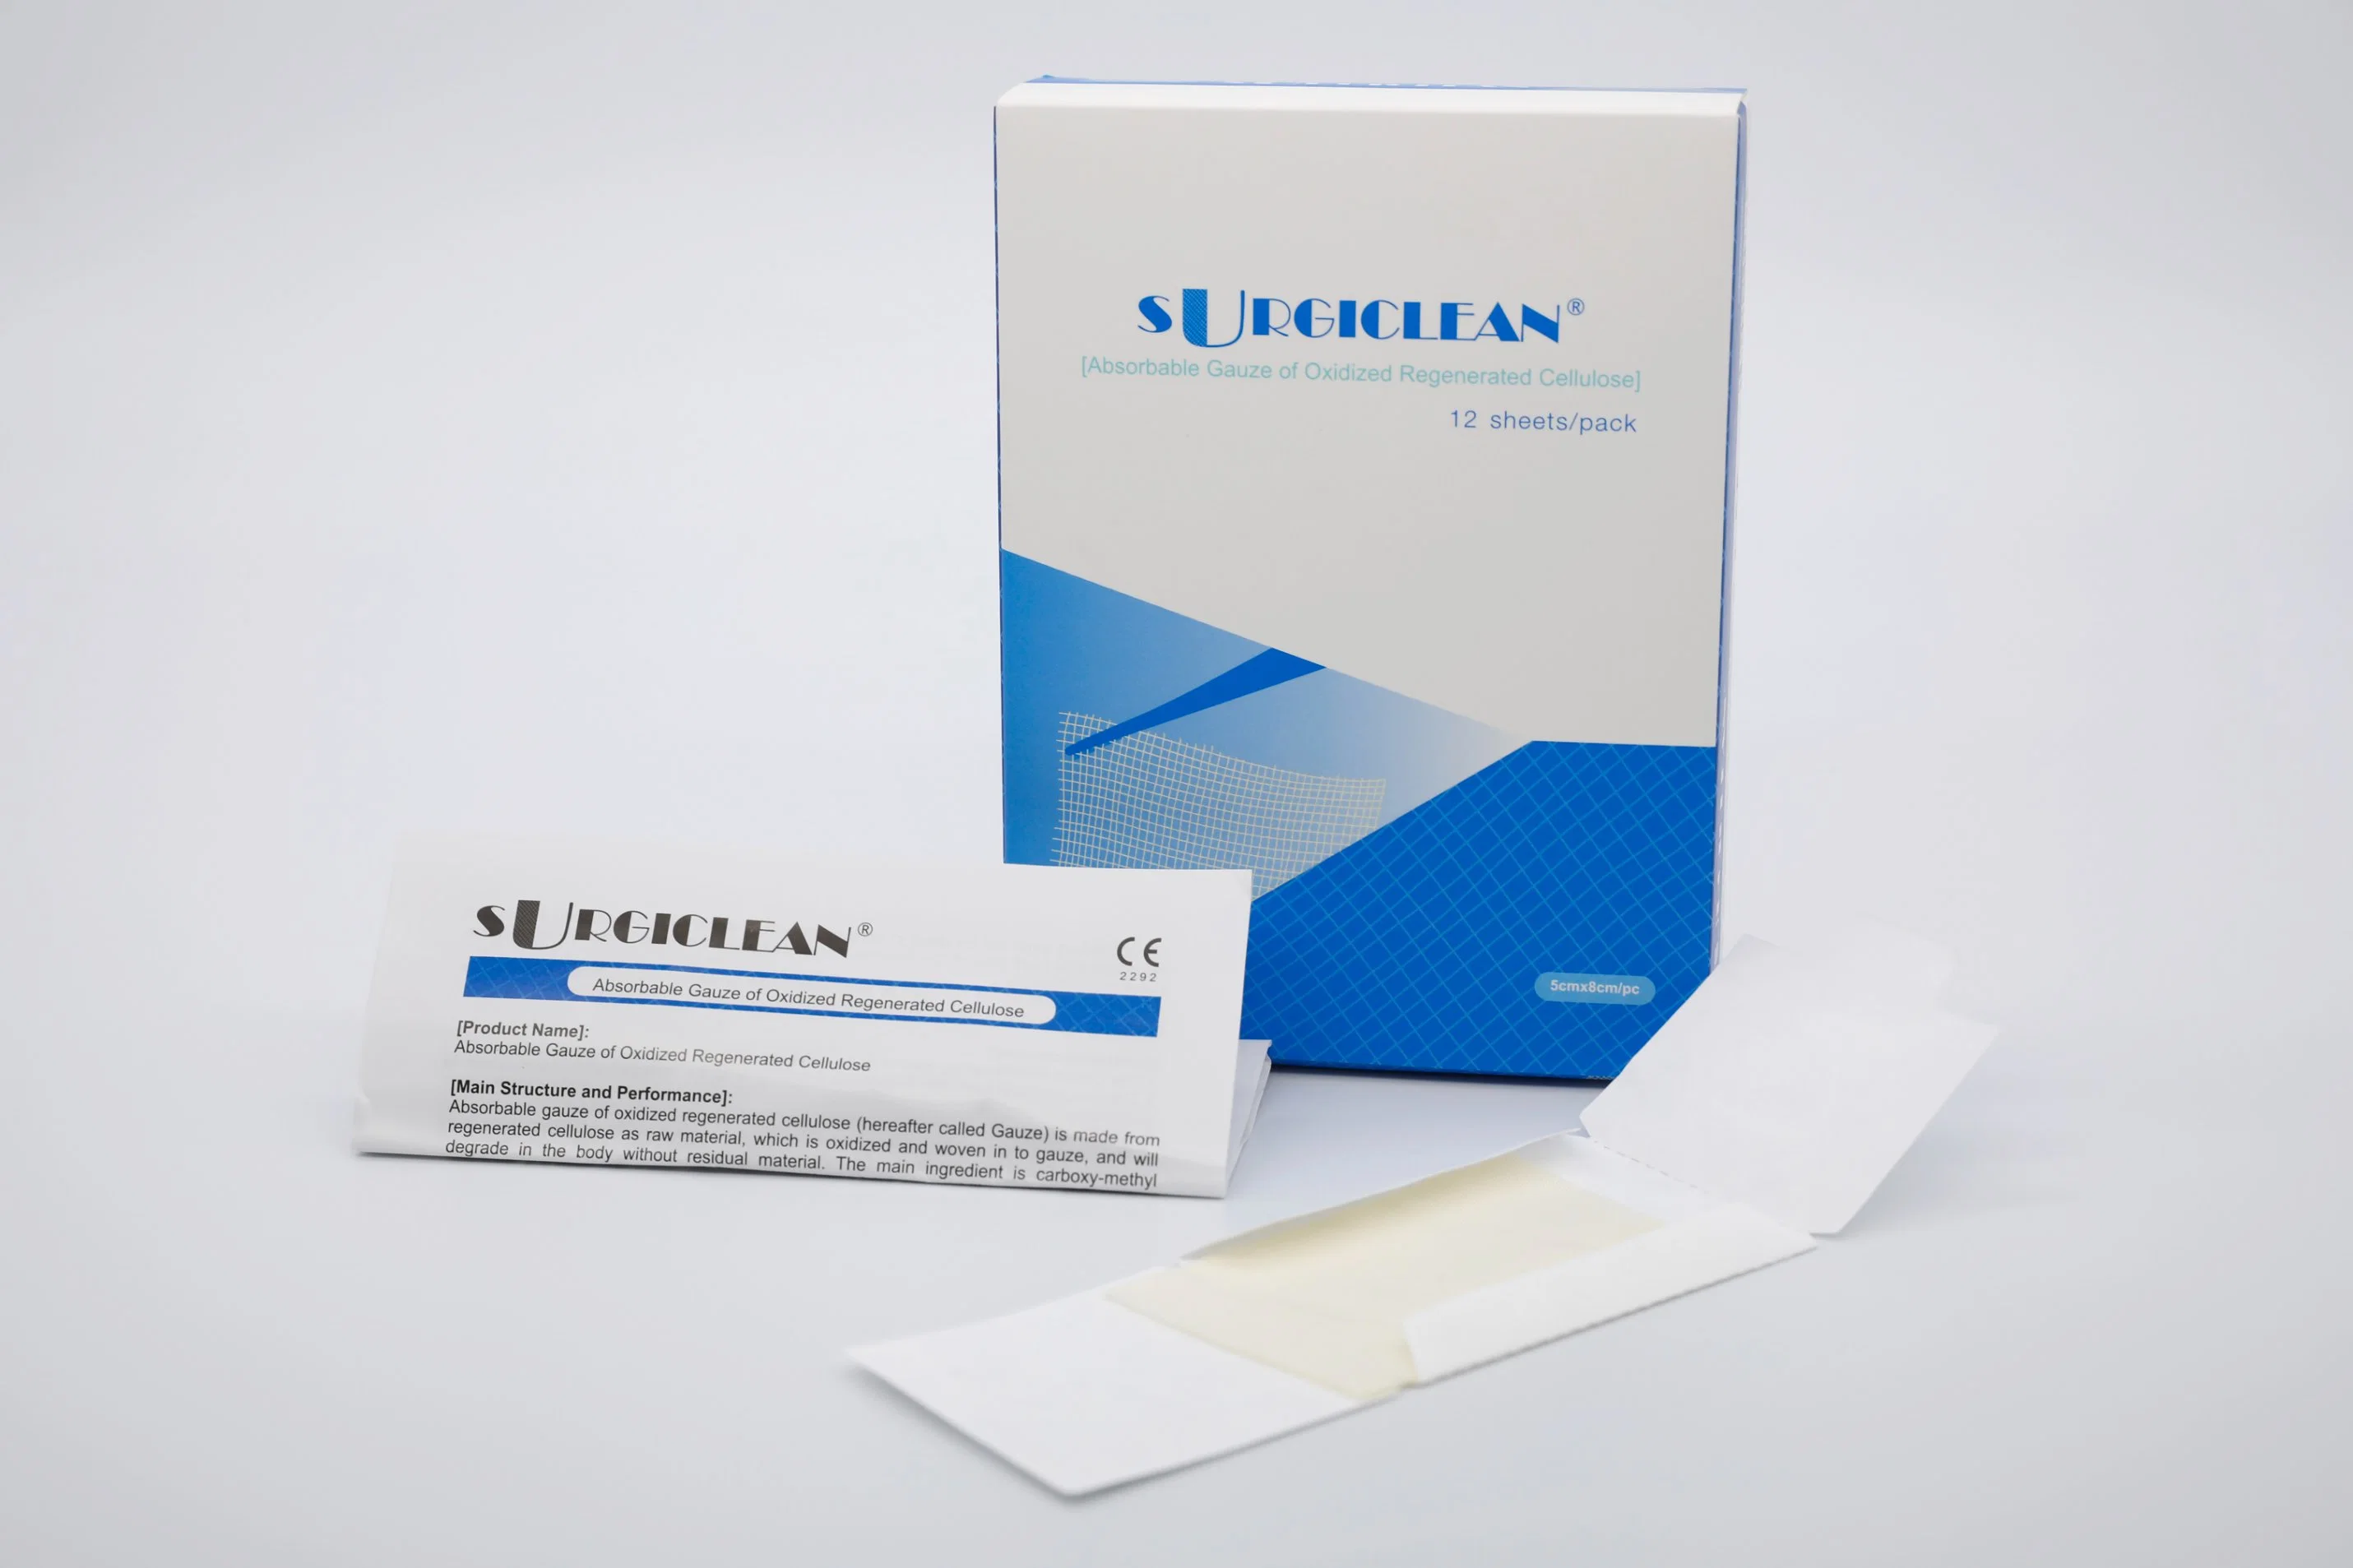 La cellulose régénérée matériel chirurgical Surgiclean 12 PCS / boîte de fournitures médicales d'habillage